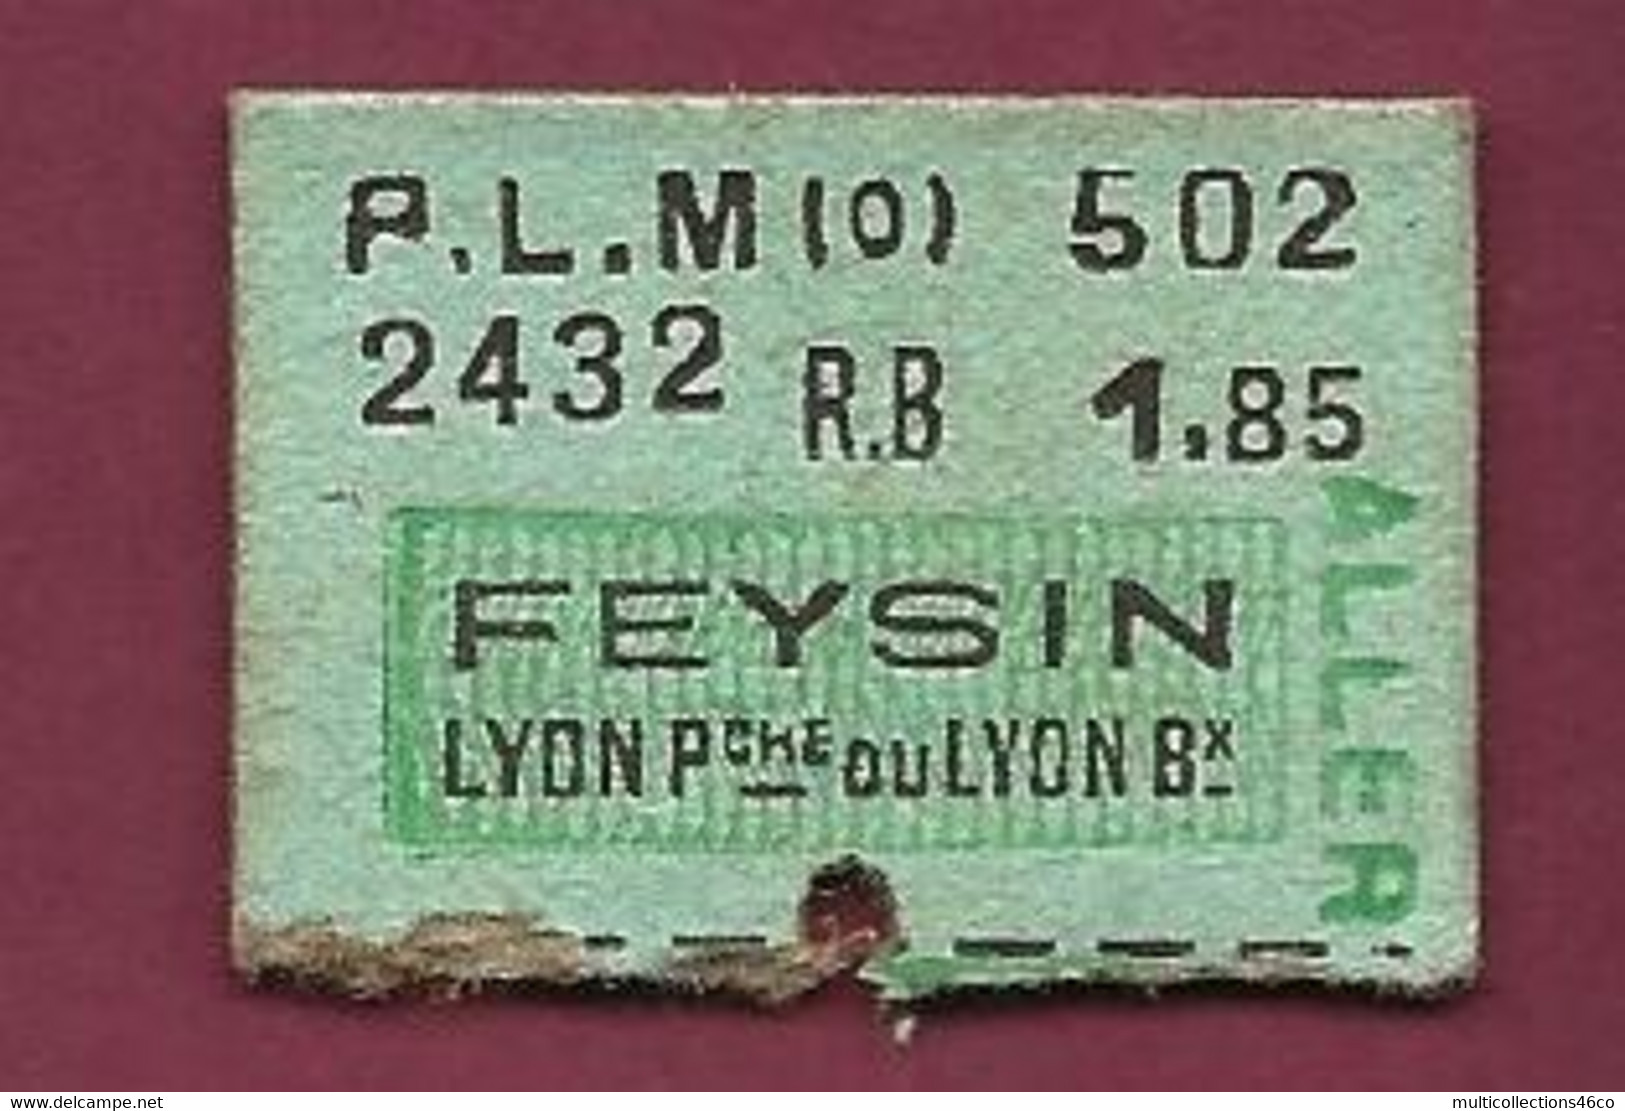 170321 - TICKET TRANSPORT METRO CHEMIN DE FER TRAM - PLM 502 2432 RB 1.85 FEYSIN LYON Pche Ou Lyon Bx - Europe